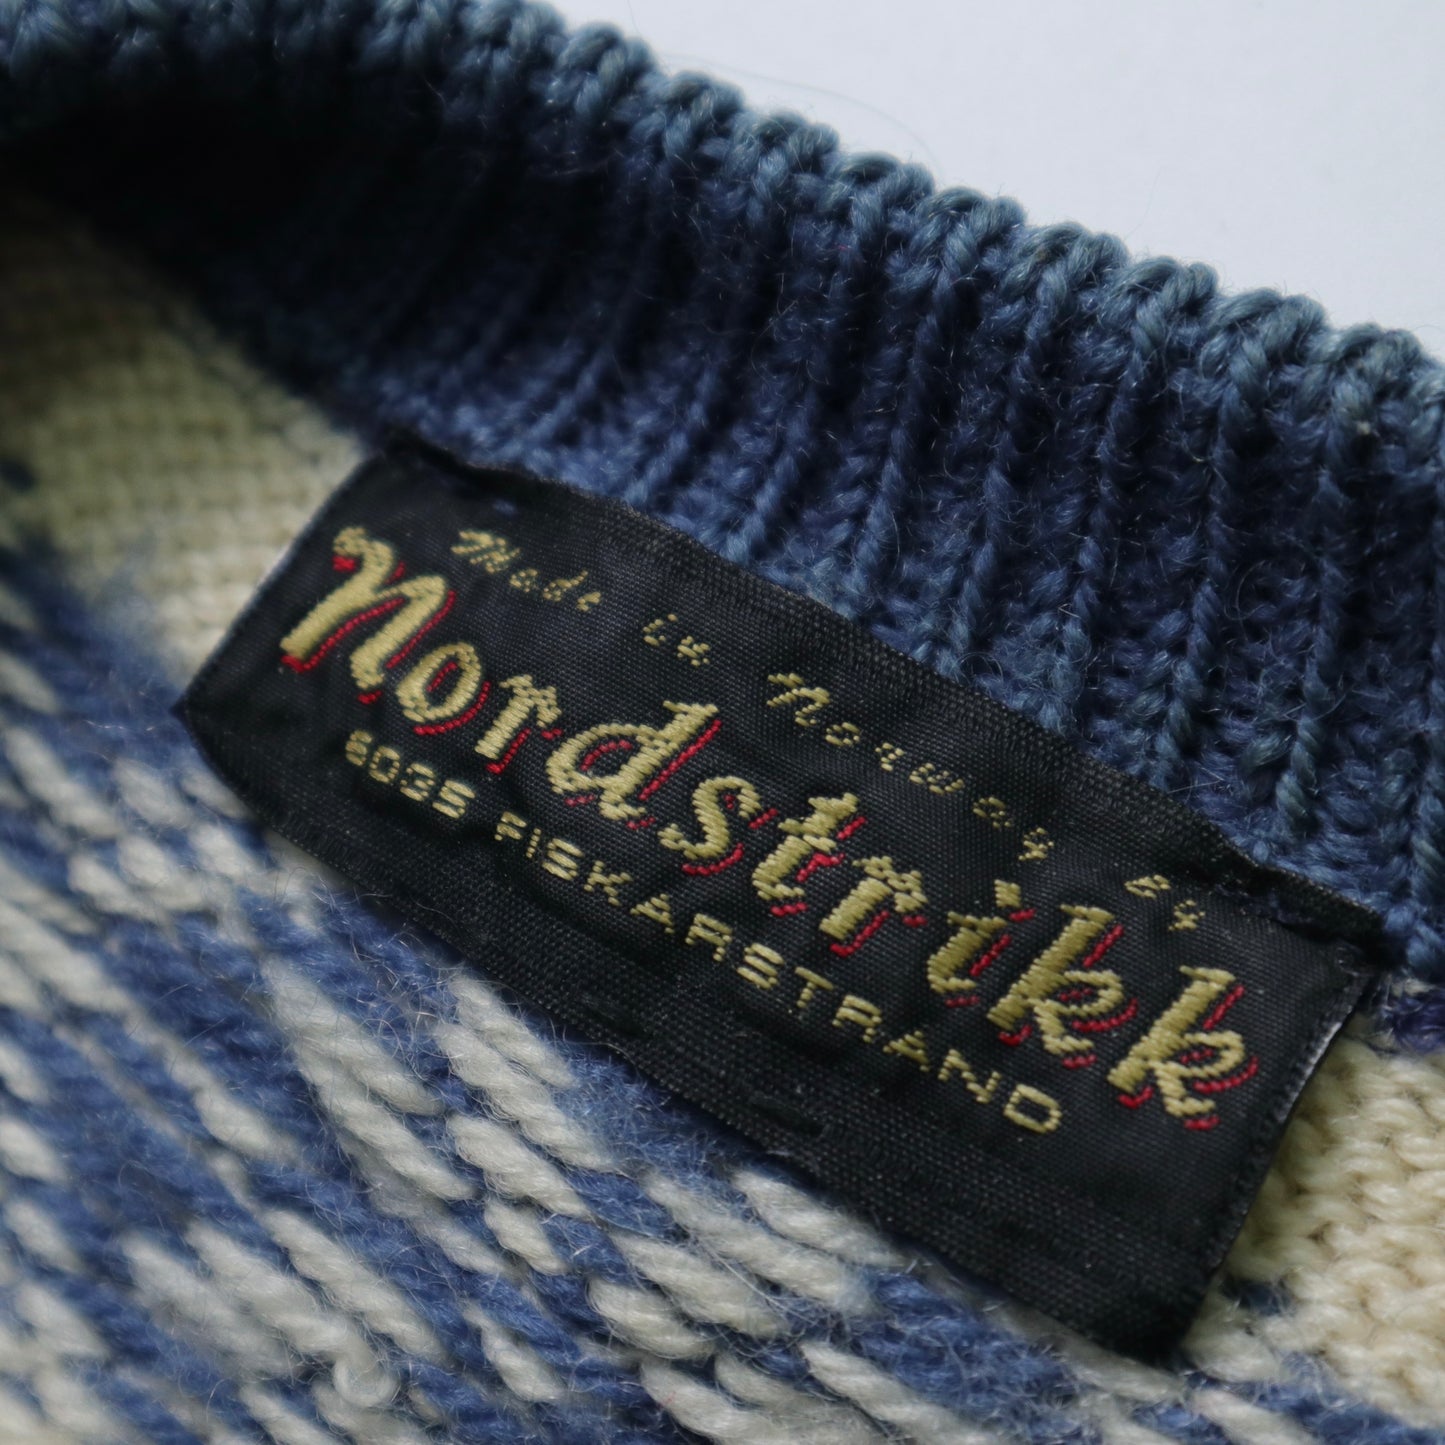 Nordstrikk Norwegian woolen clothing engraved metal buckle made in Norway